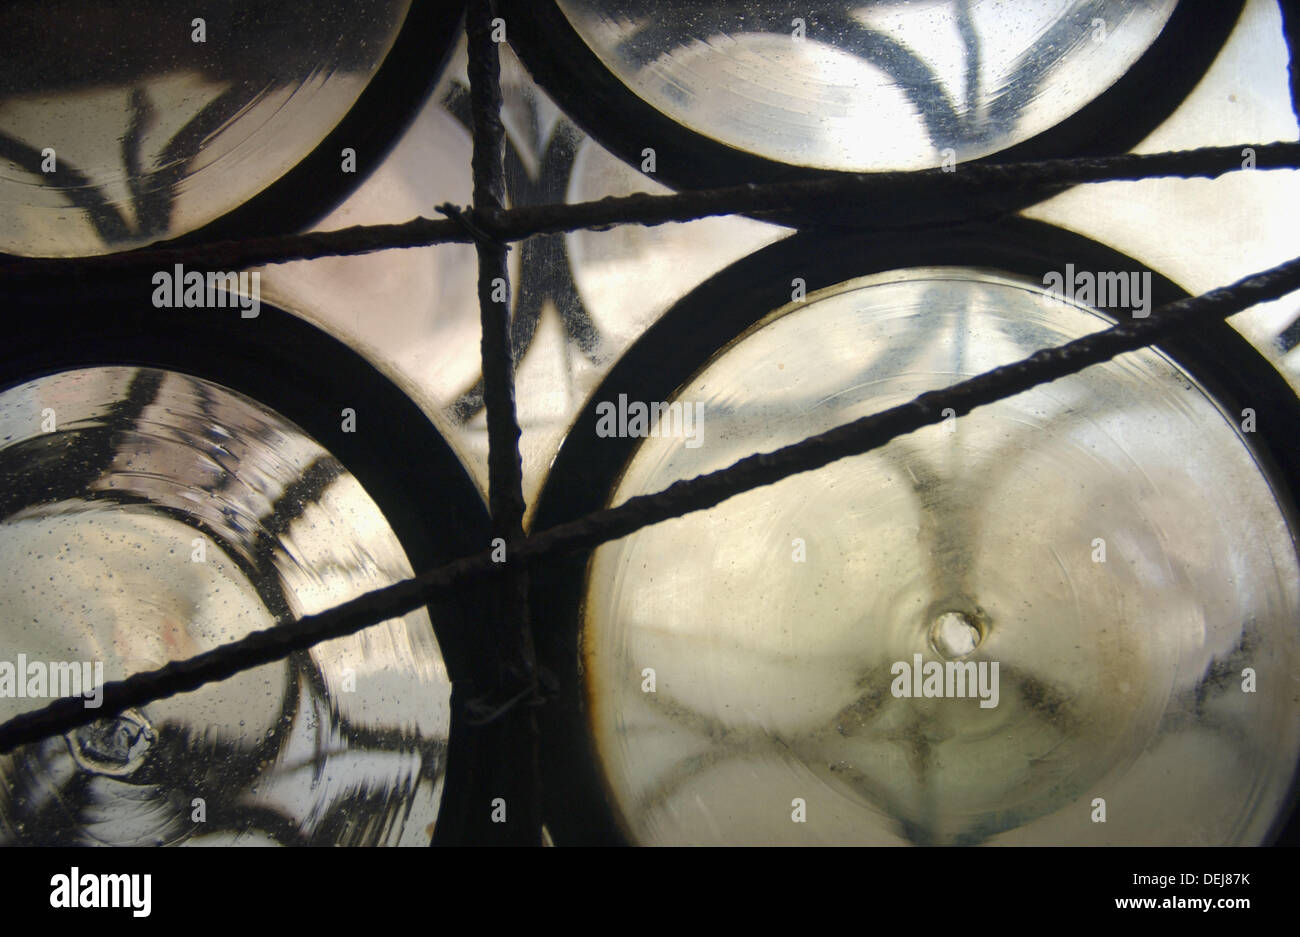 Fenêtres en verre coupe du Palais des Doges, Venise. Veneto, Italie Banque D'Images